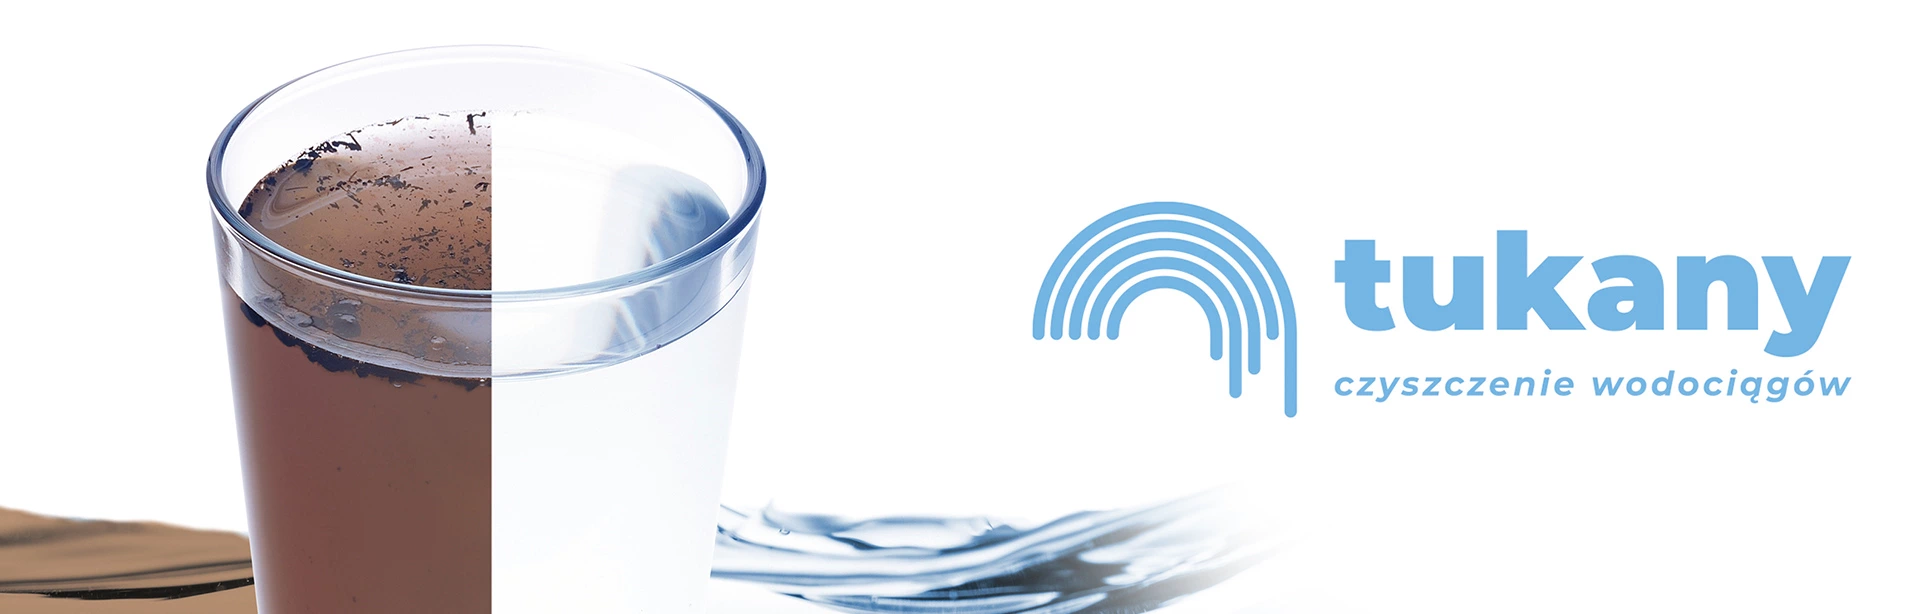 Slajd #3 - Szklanka wody